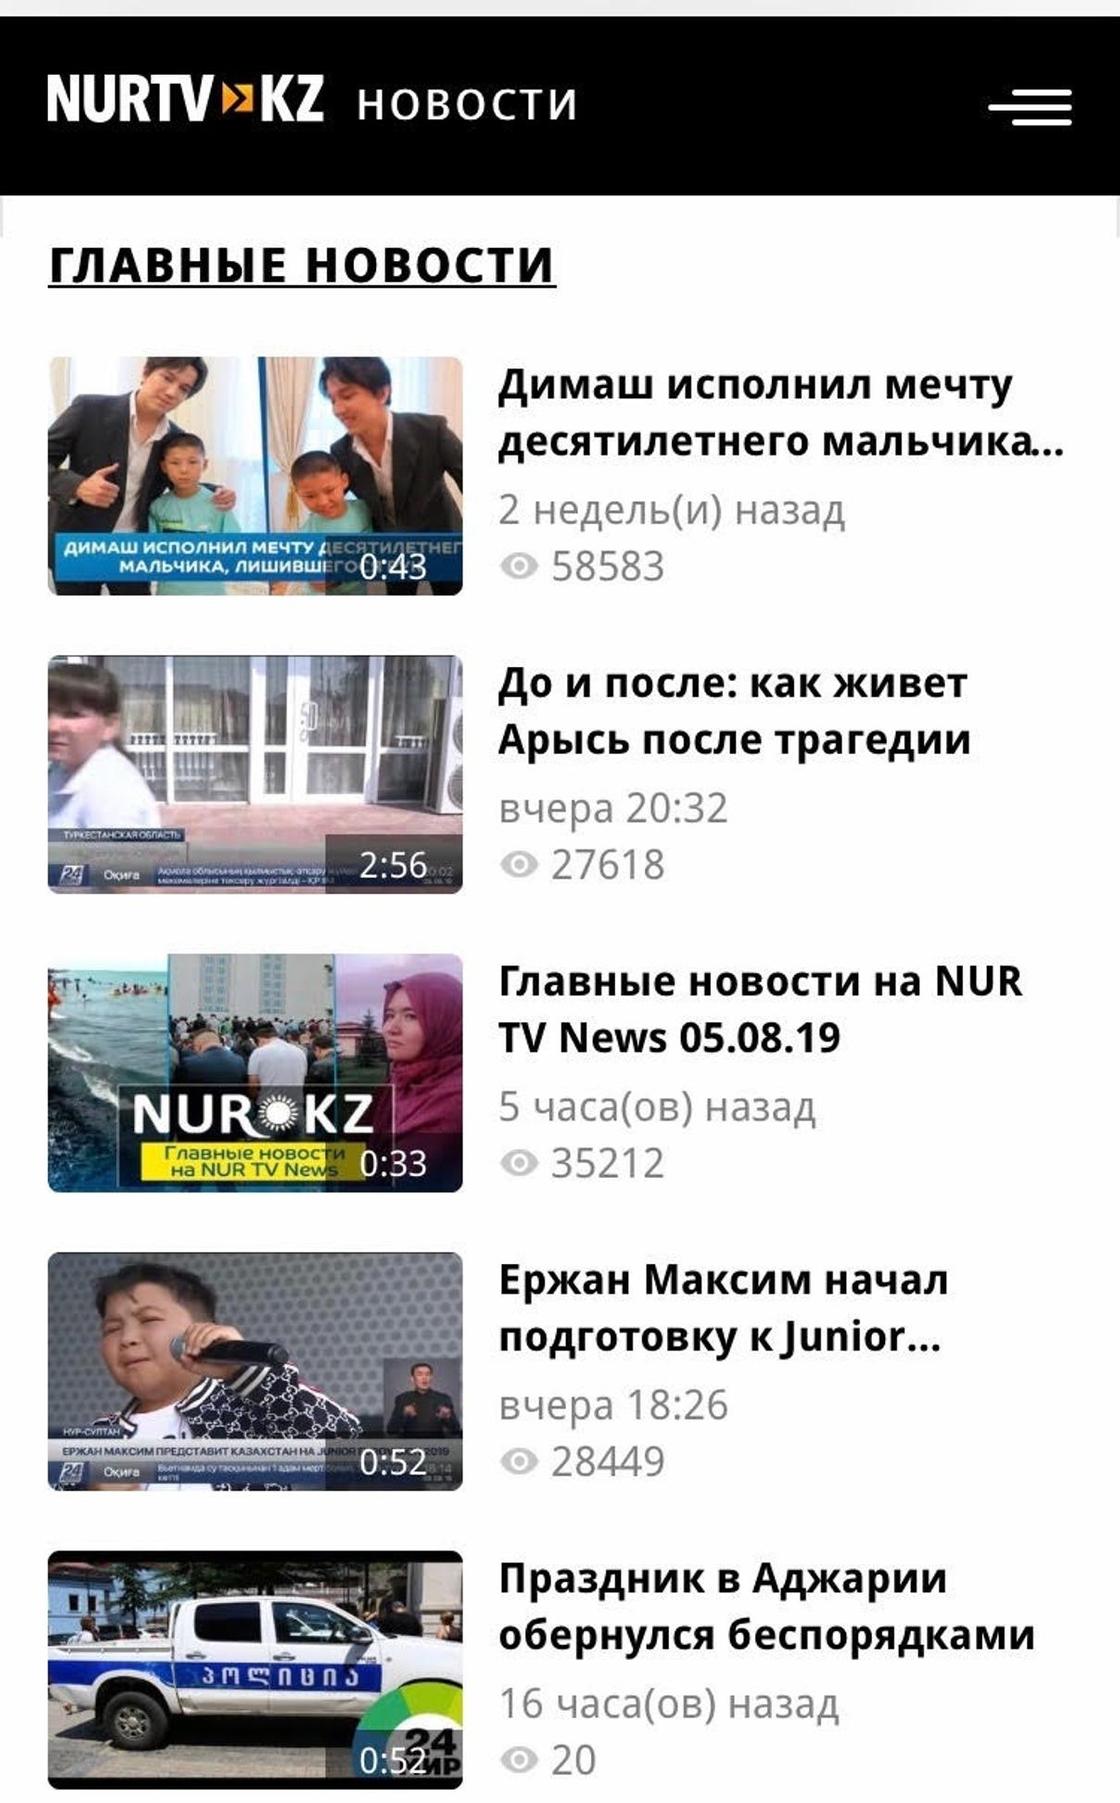 NUR TV News